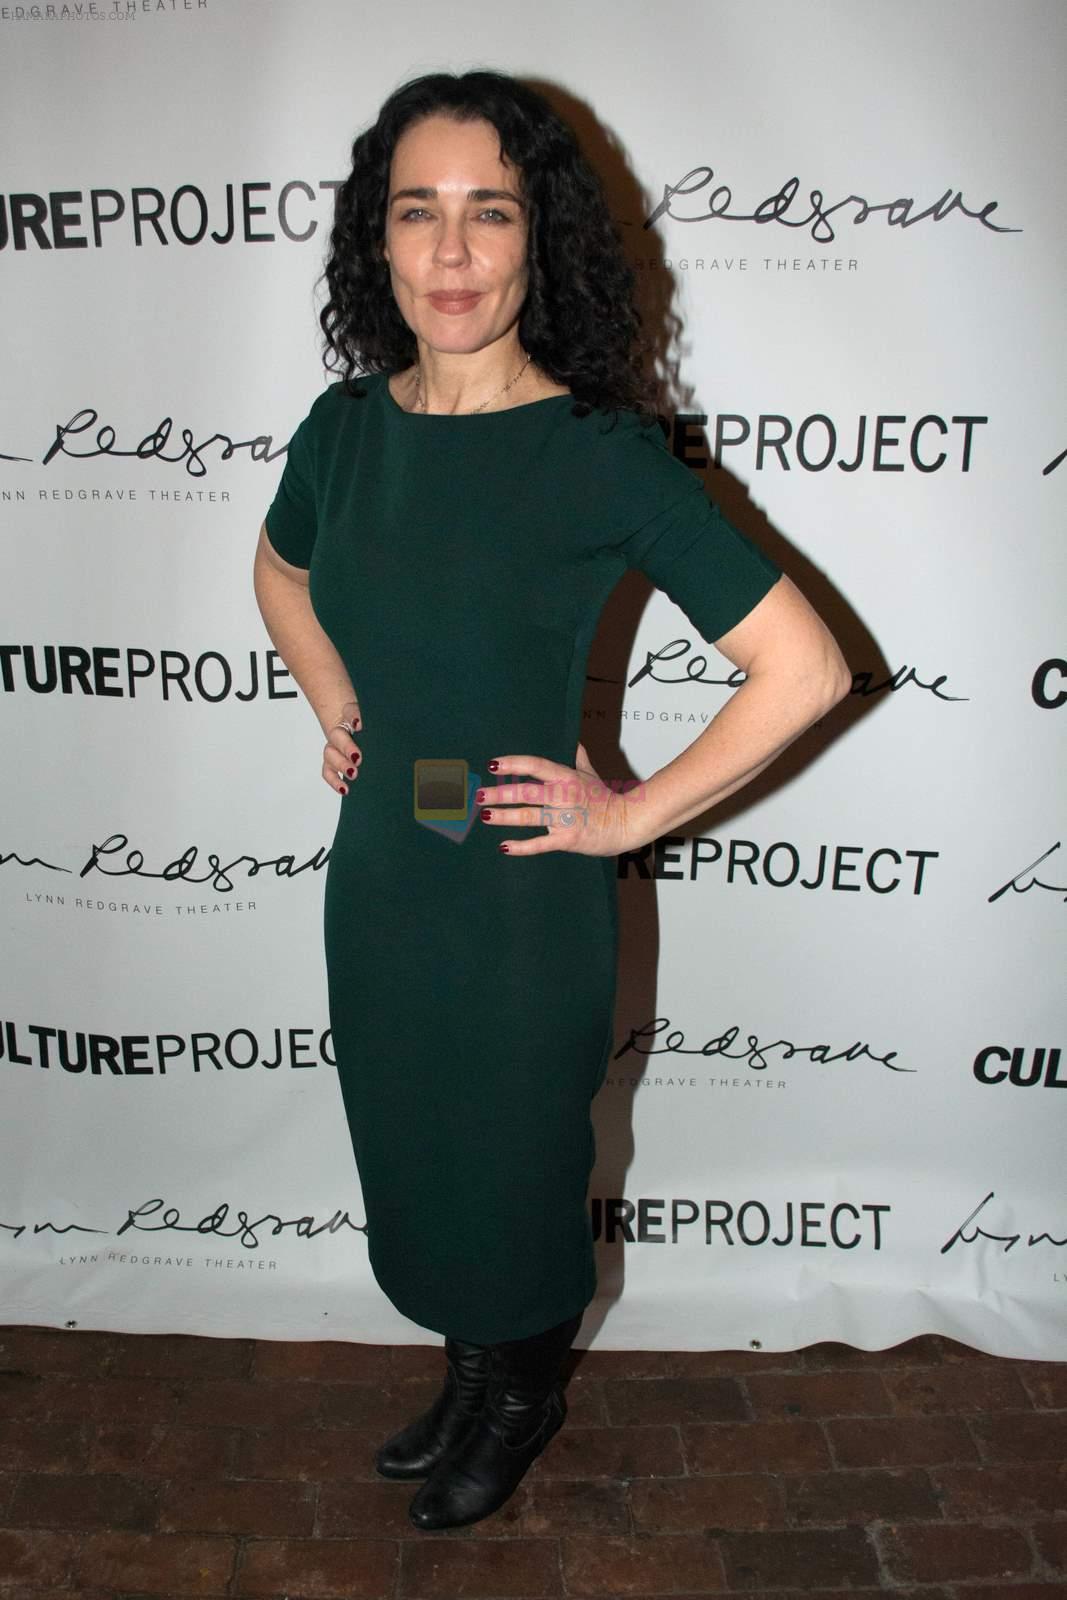 Yael Farber at Nirbhaya's premiere at Brodway, NYC